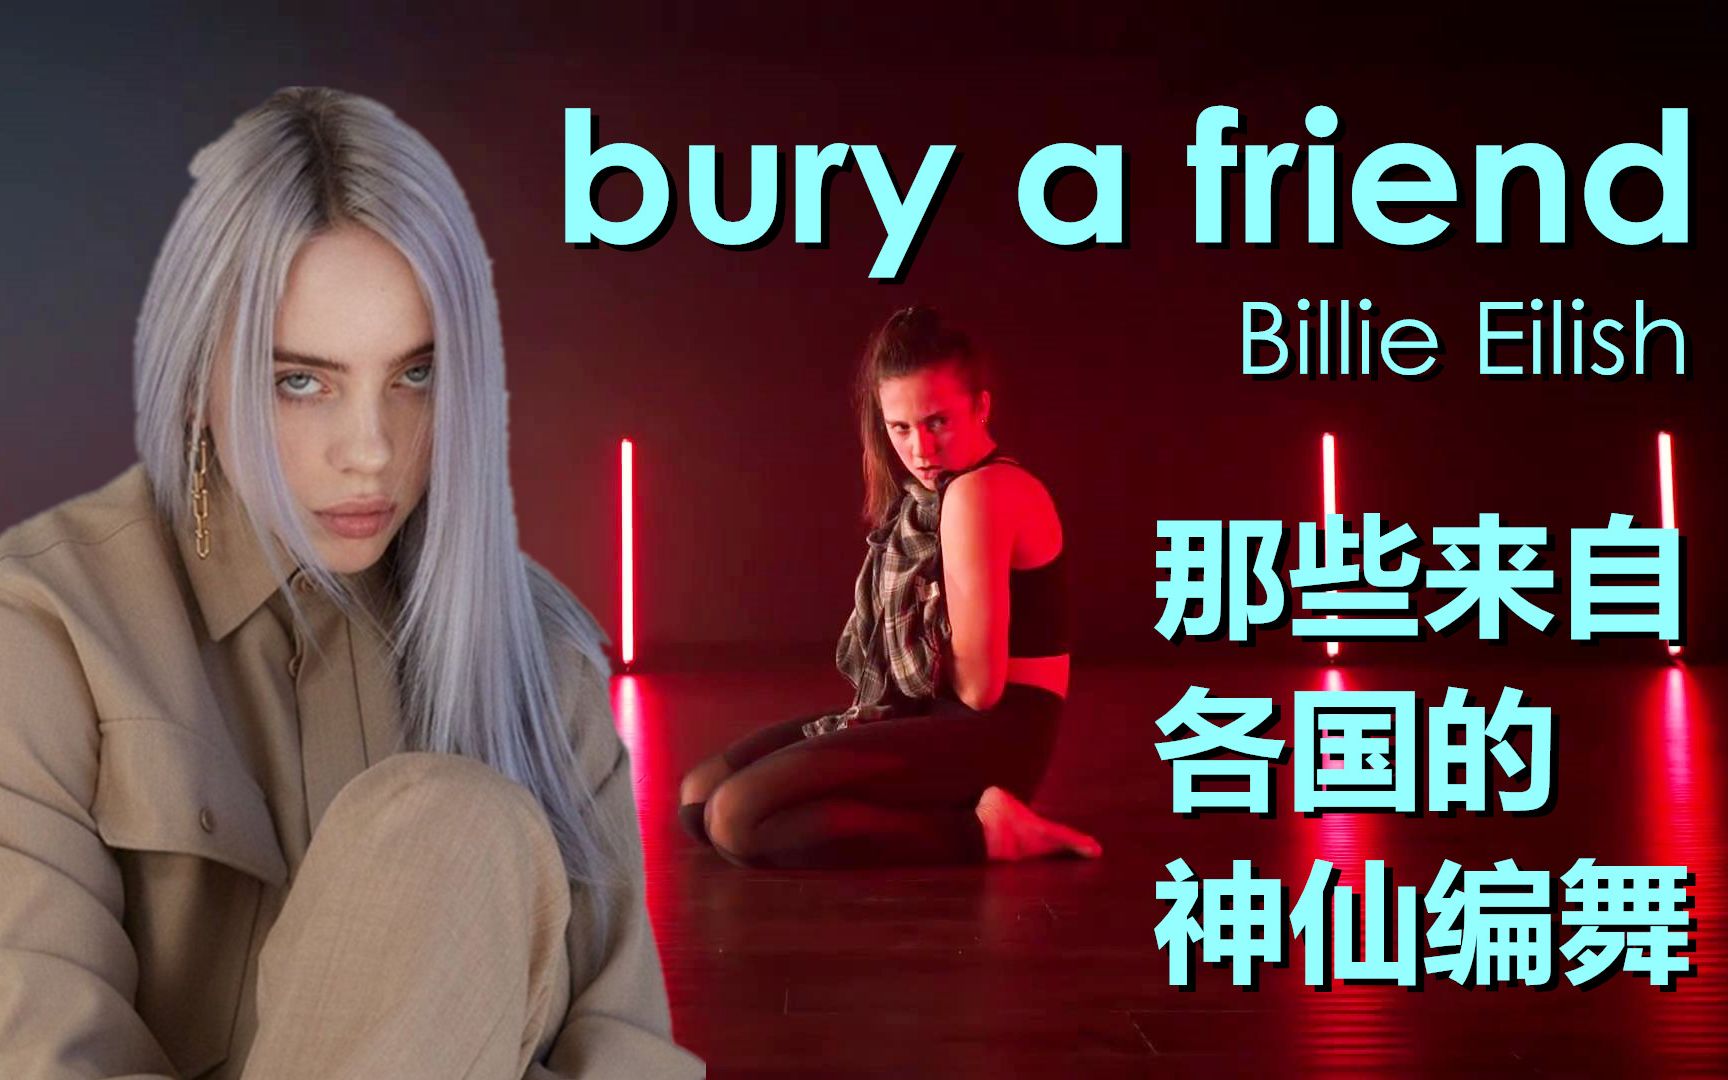 碧梨bury a friend各国神仙编舞合集！Billie Eilish爆红黑暗风单曲 你喜欢哪个版本？